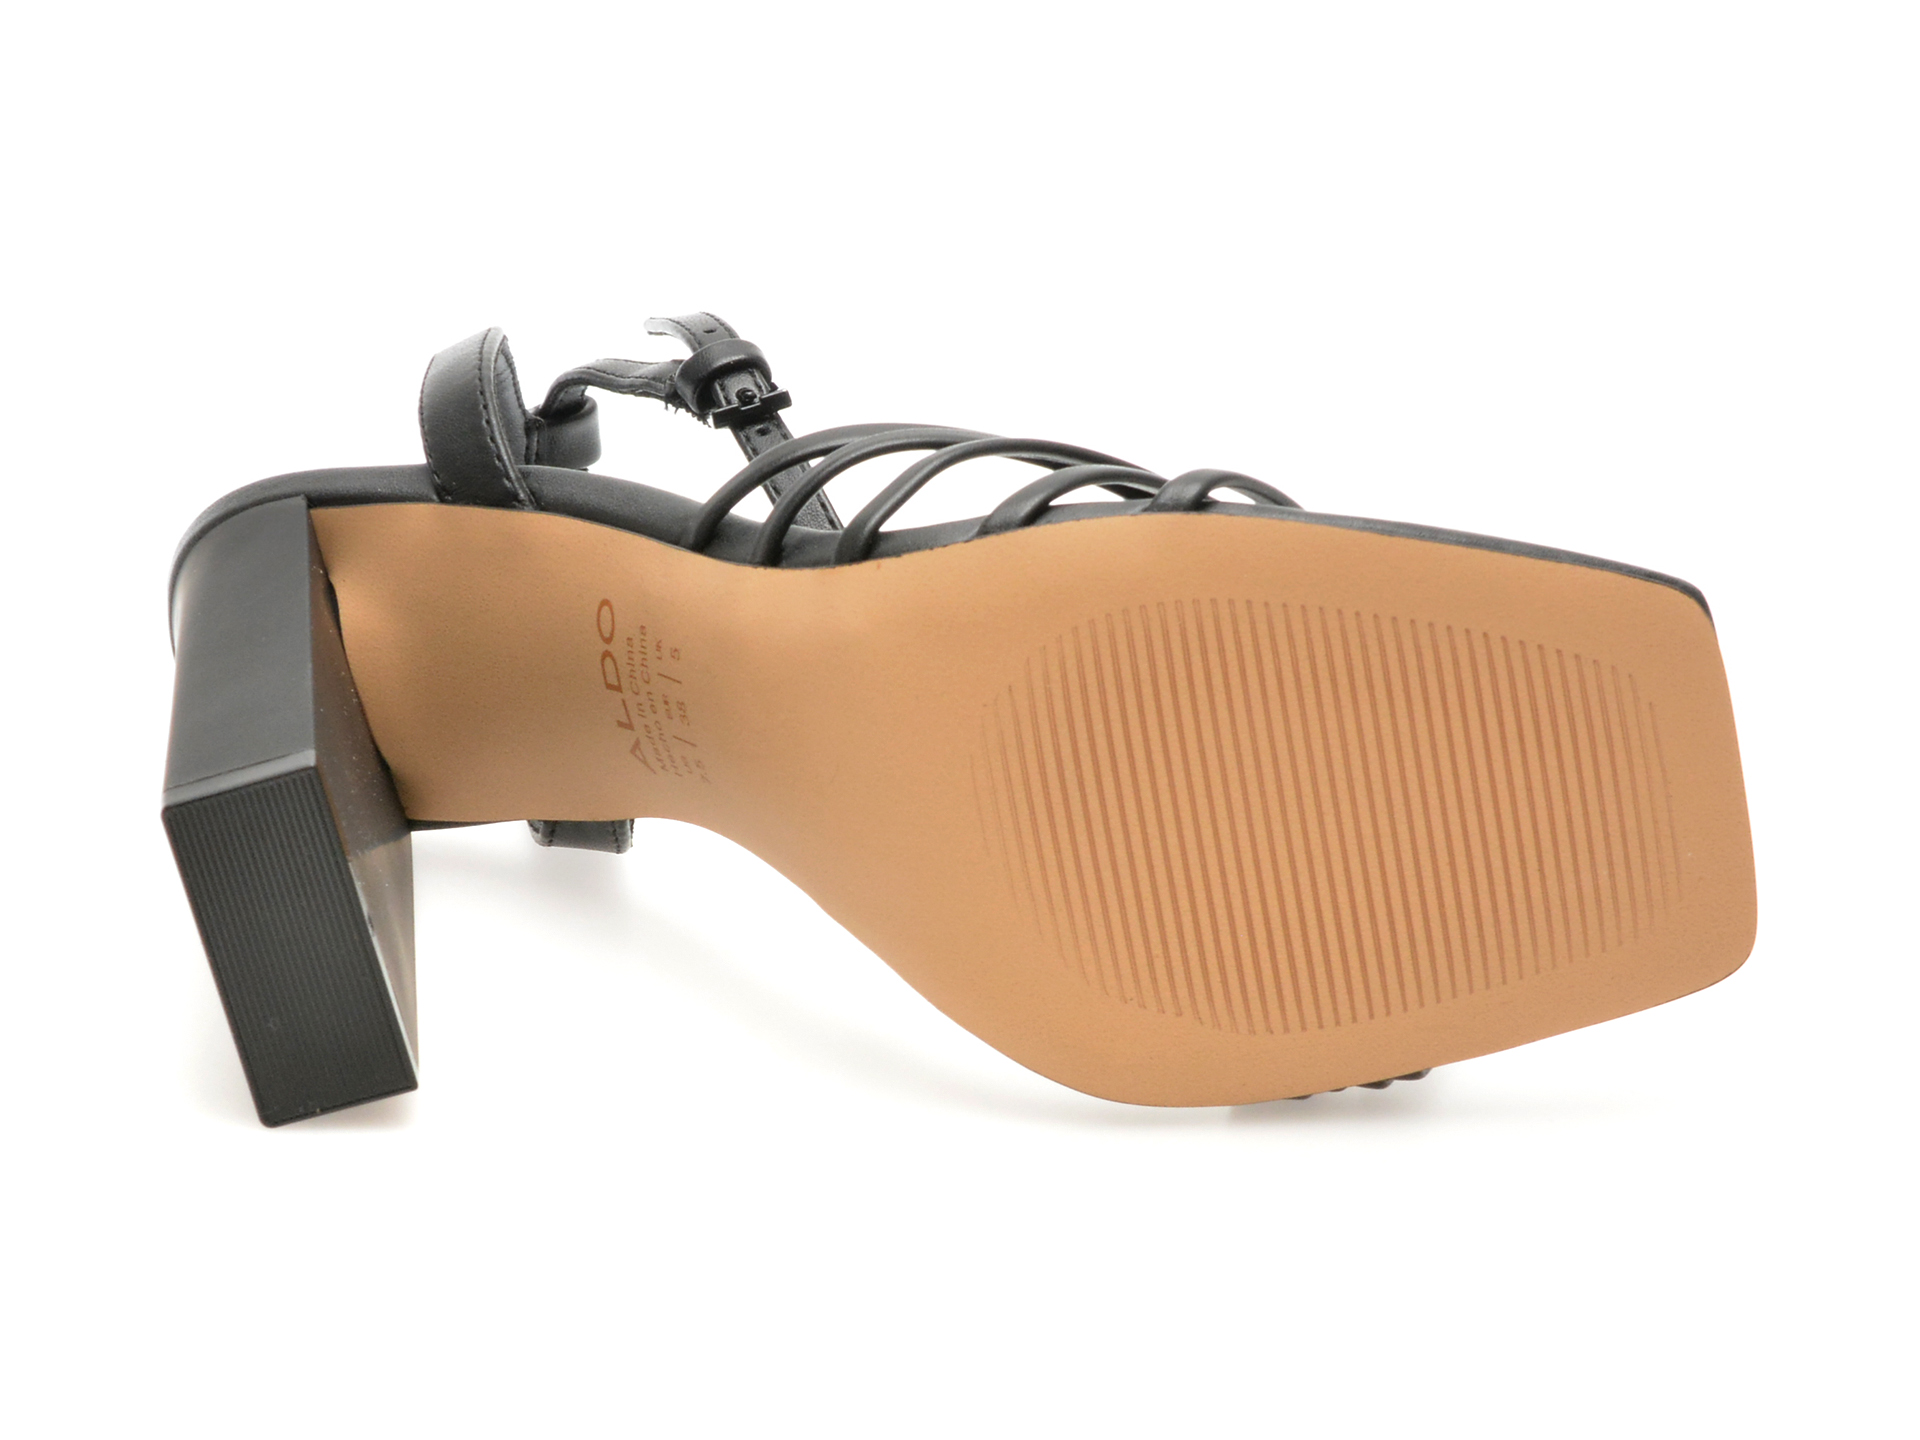 Sandale elegante ALDO negre, 13571642, din piele ecologica